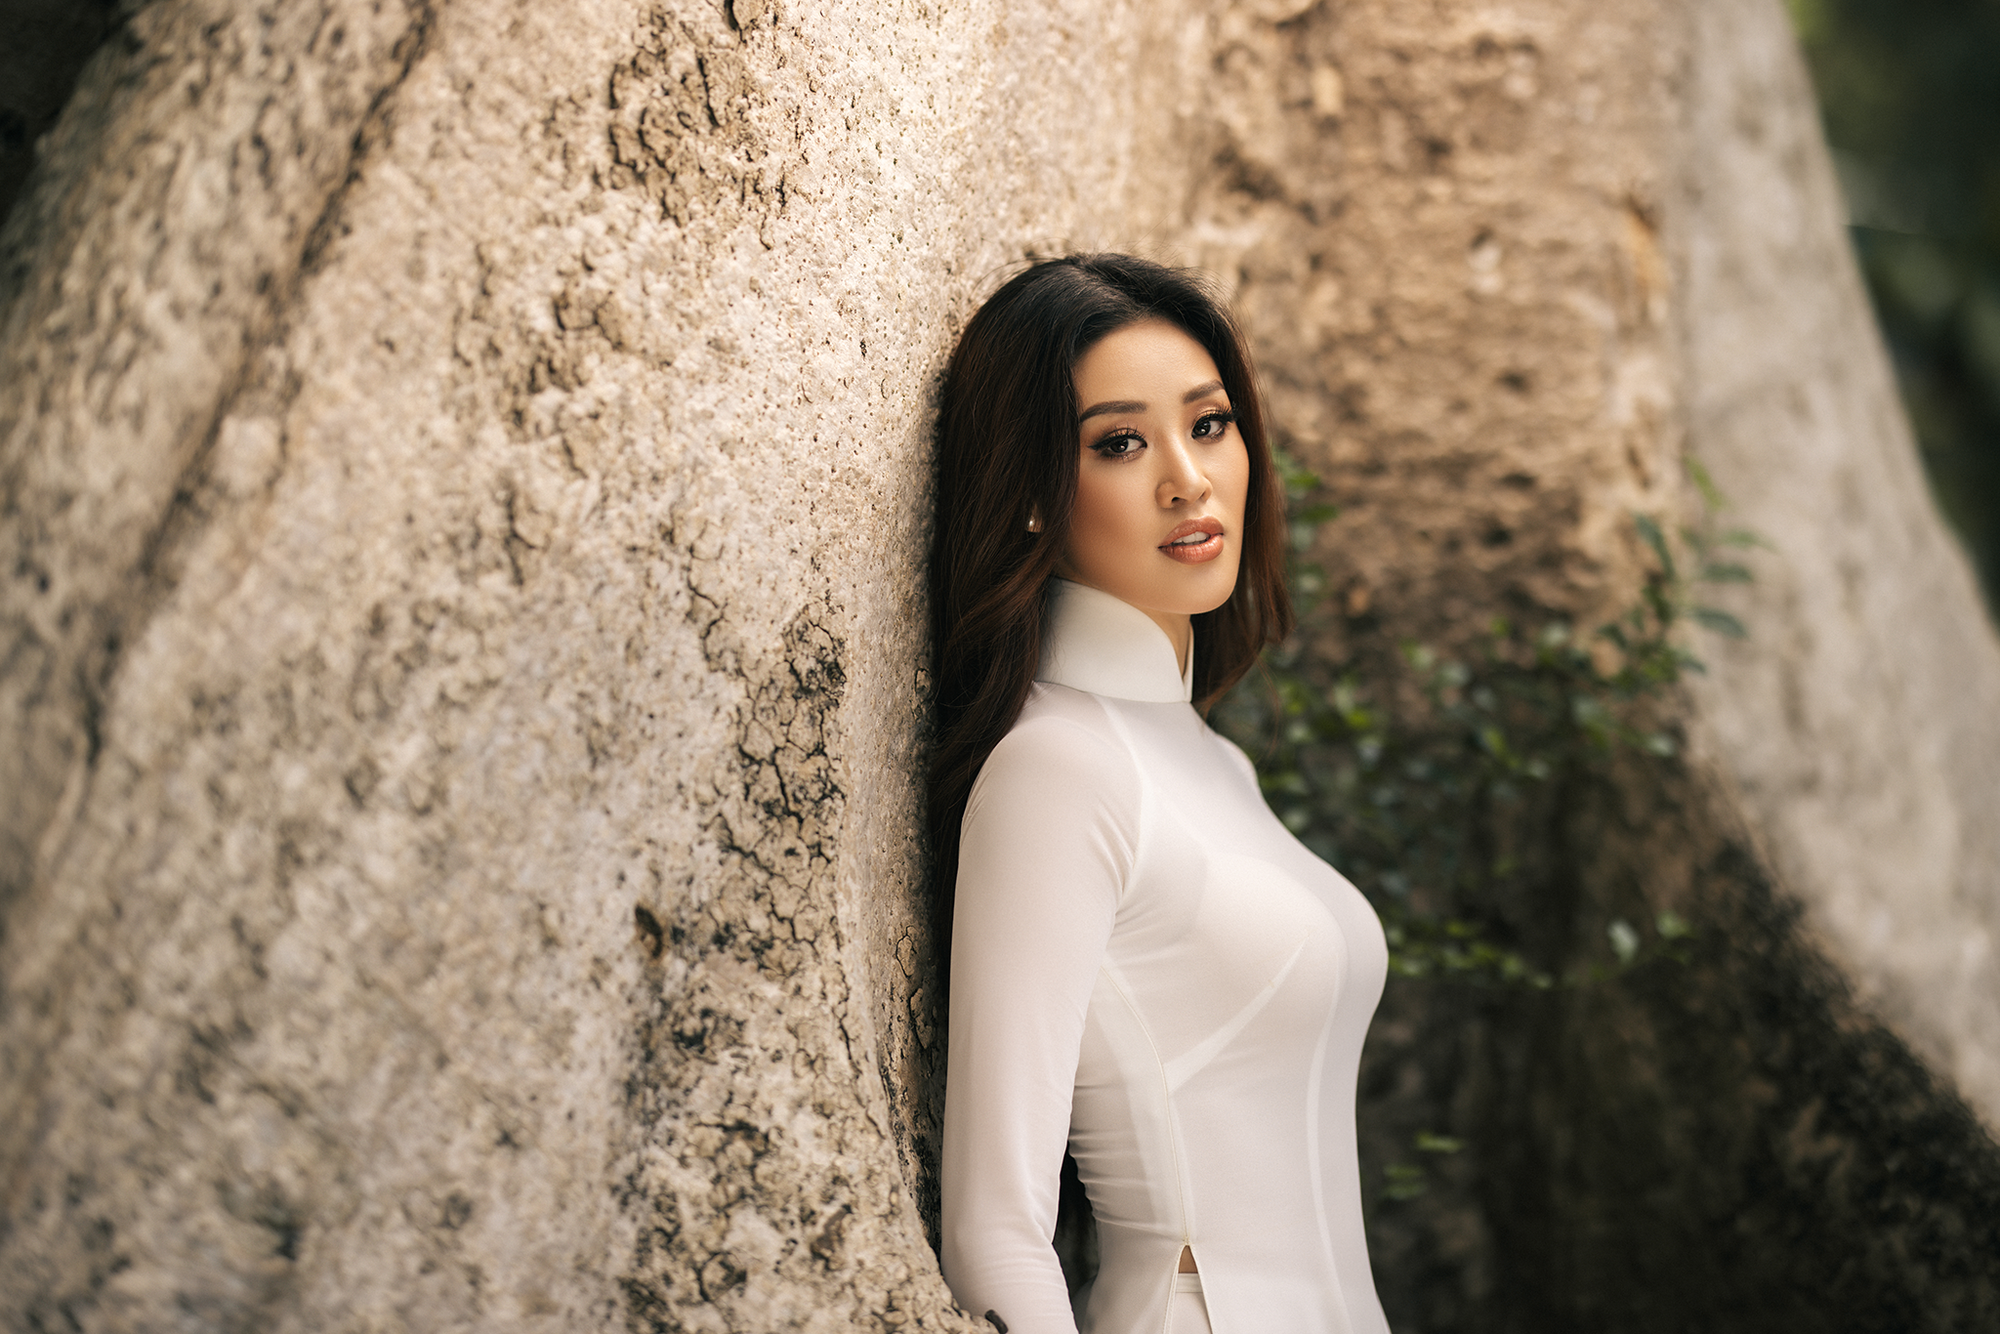 Hoa hậu Khánh Vân mặc áo dài trắng đẹp như mỹ nhân trong tranh - Ảnh 2.